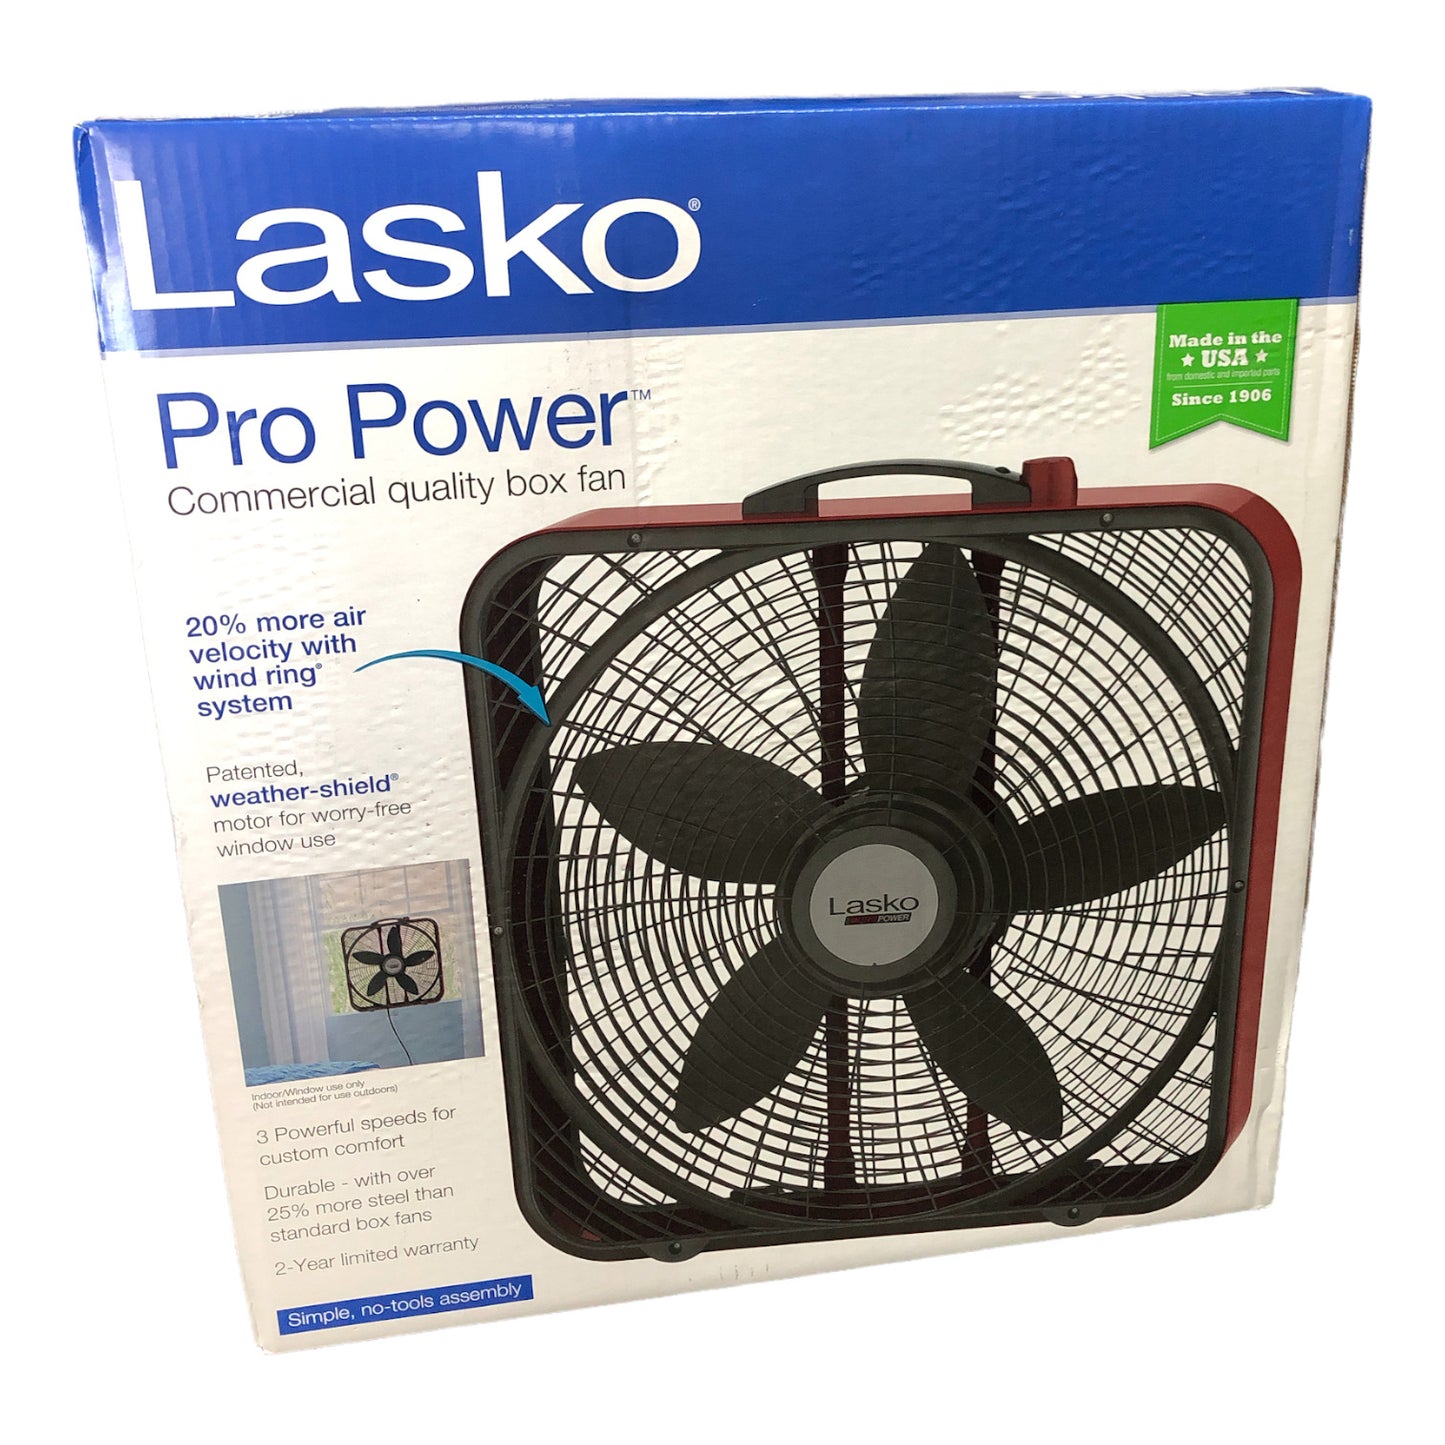 Lasko Pro Power Commercial Quality Box Fan